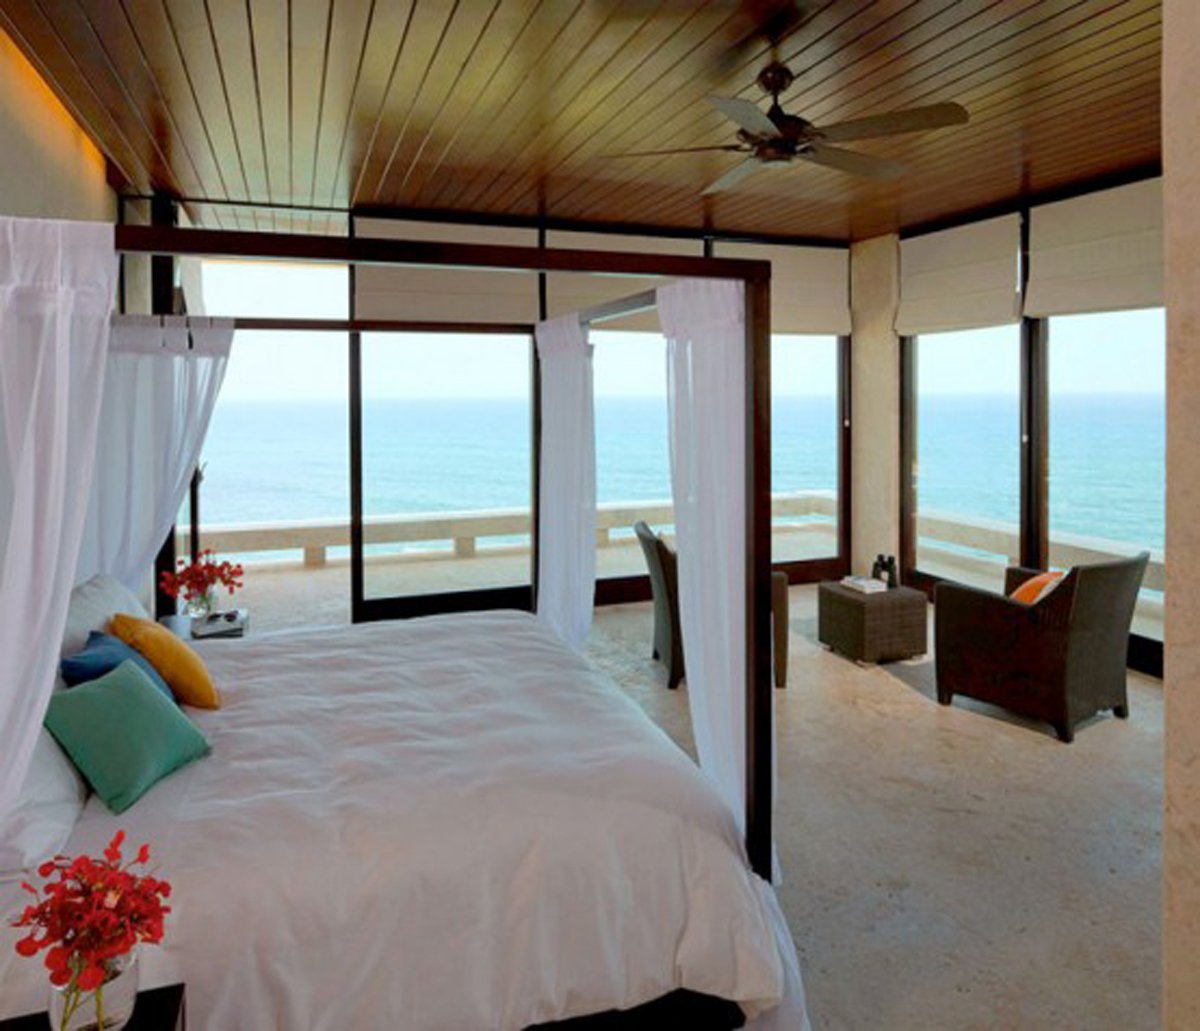 Отели рядом с морем. Спальня с видом на океан. Спальня в доме у моря. Спальня с панорамными окнами на море. Кровать рядом с морем.